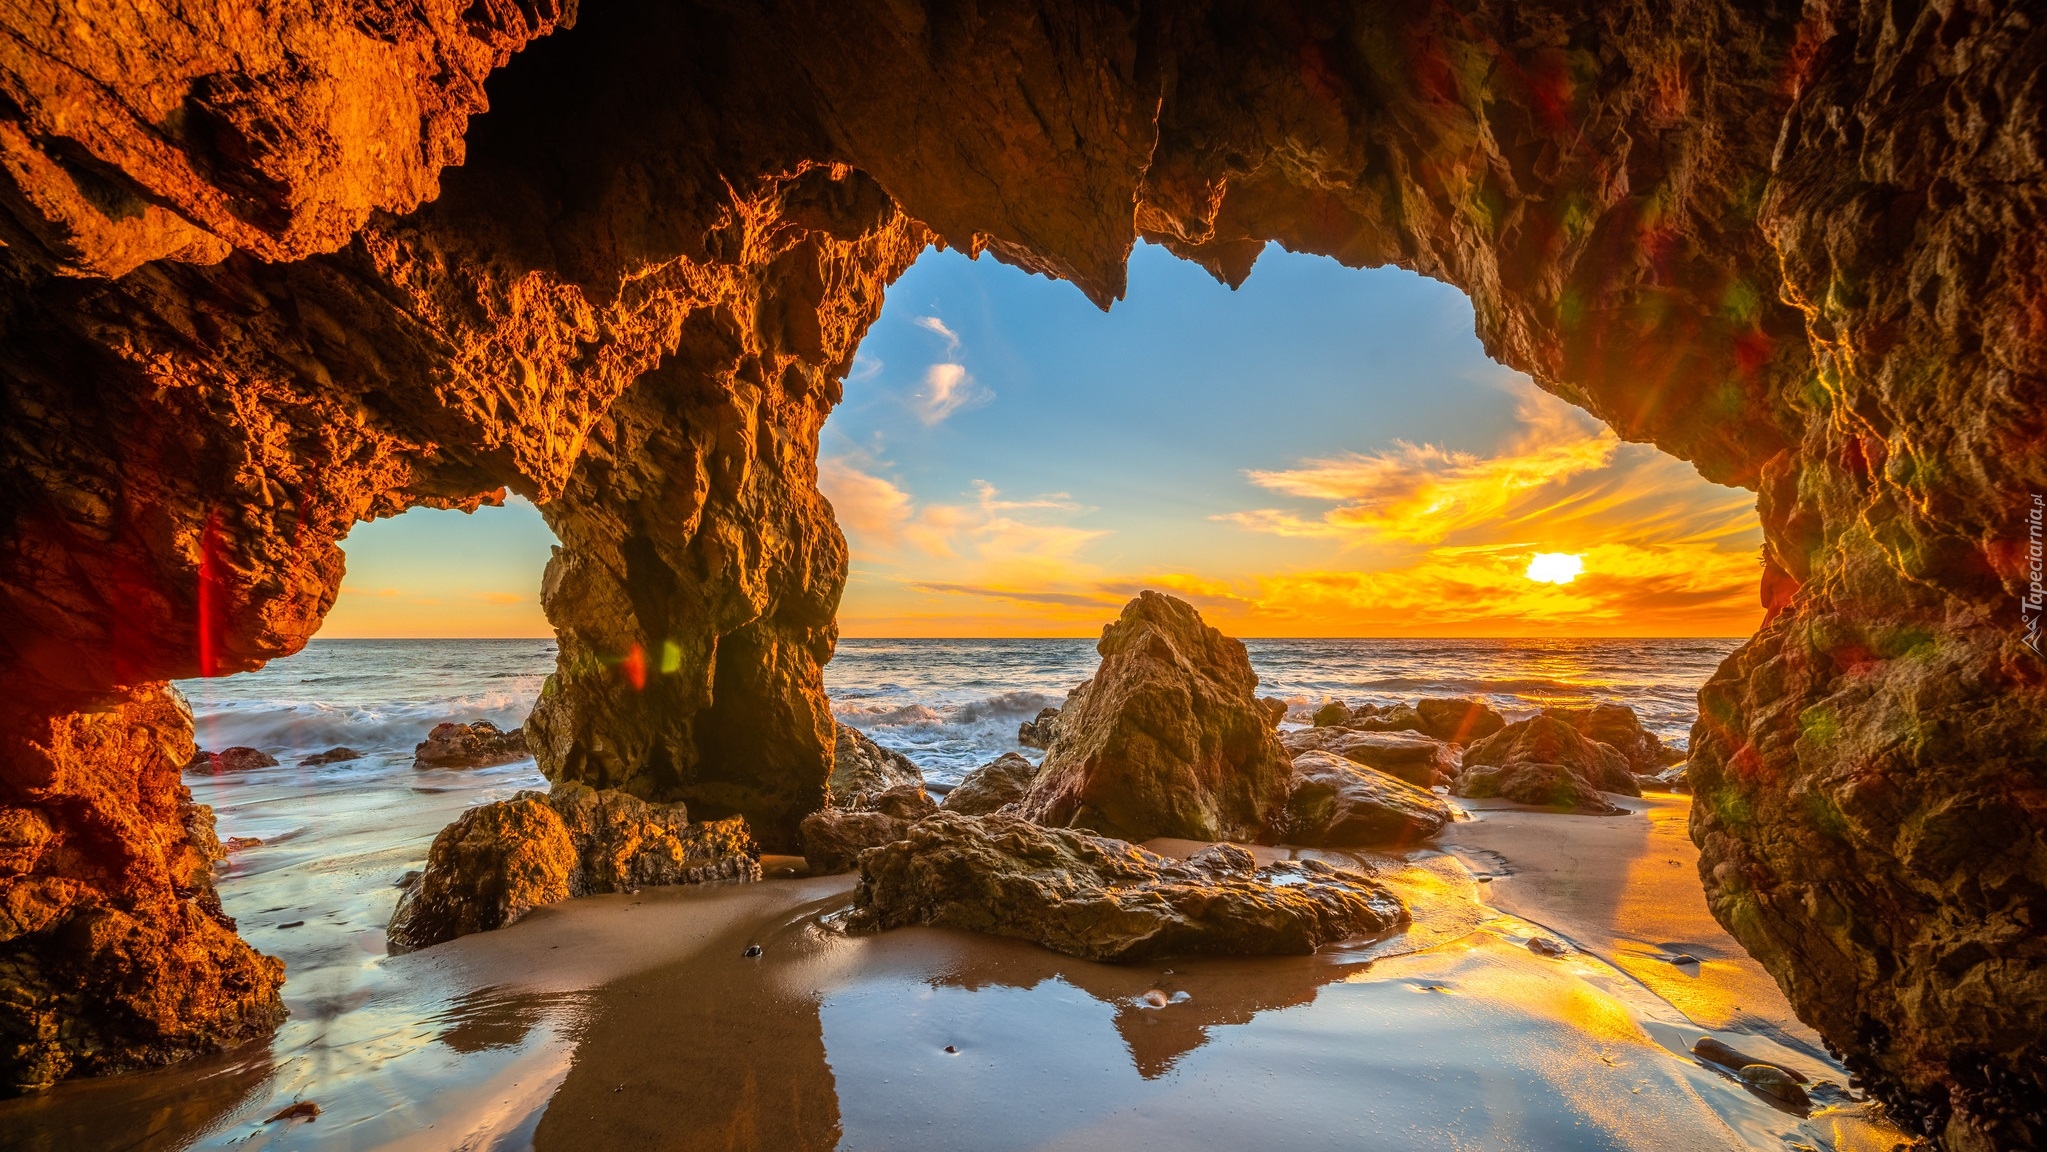 Jaskinia, Skały, Morze, Plaża, El Matador Beach, Zachód słońca, Malibu, Hrabstwo Los Angeles, Kalifornia, Stany Zjednoczone